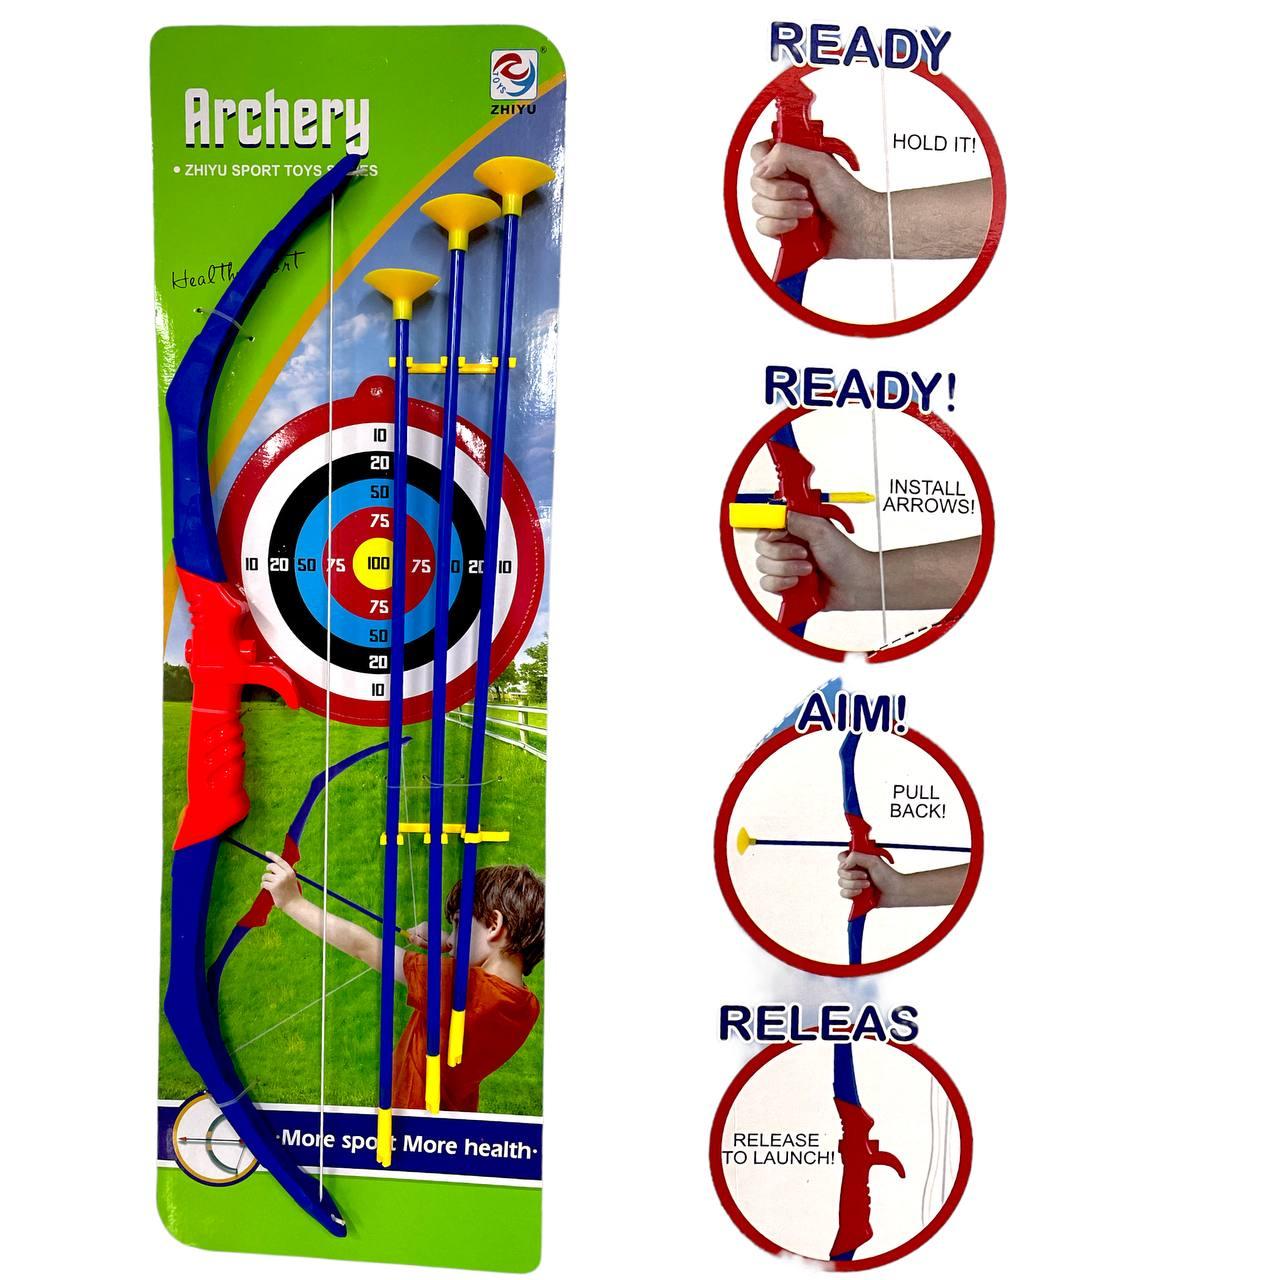 ZY1922 Archery лук и 3 стрелы на картонке 69*23см